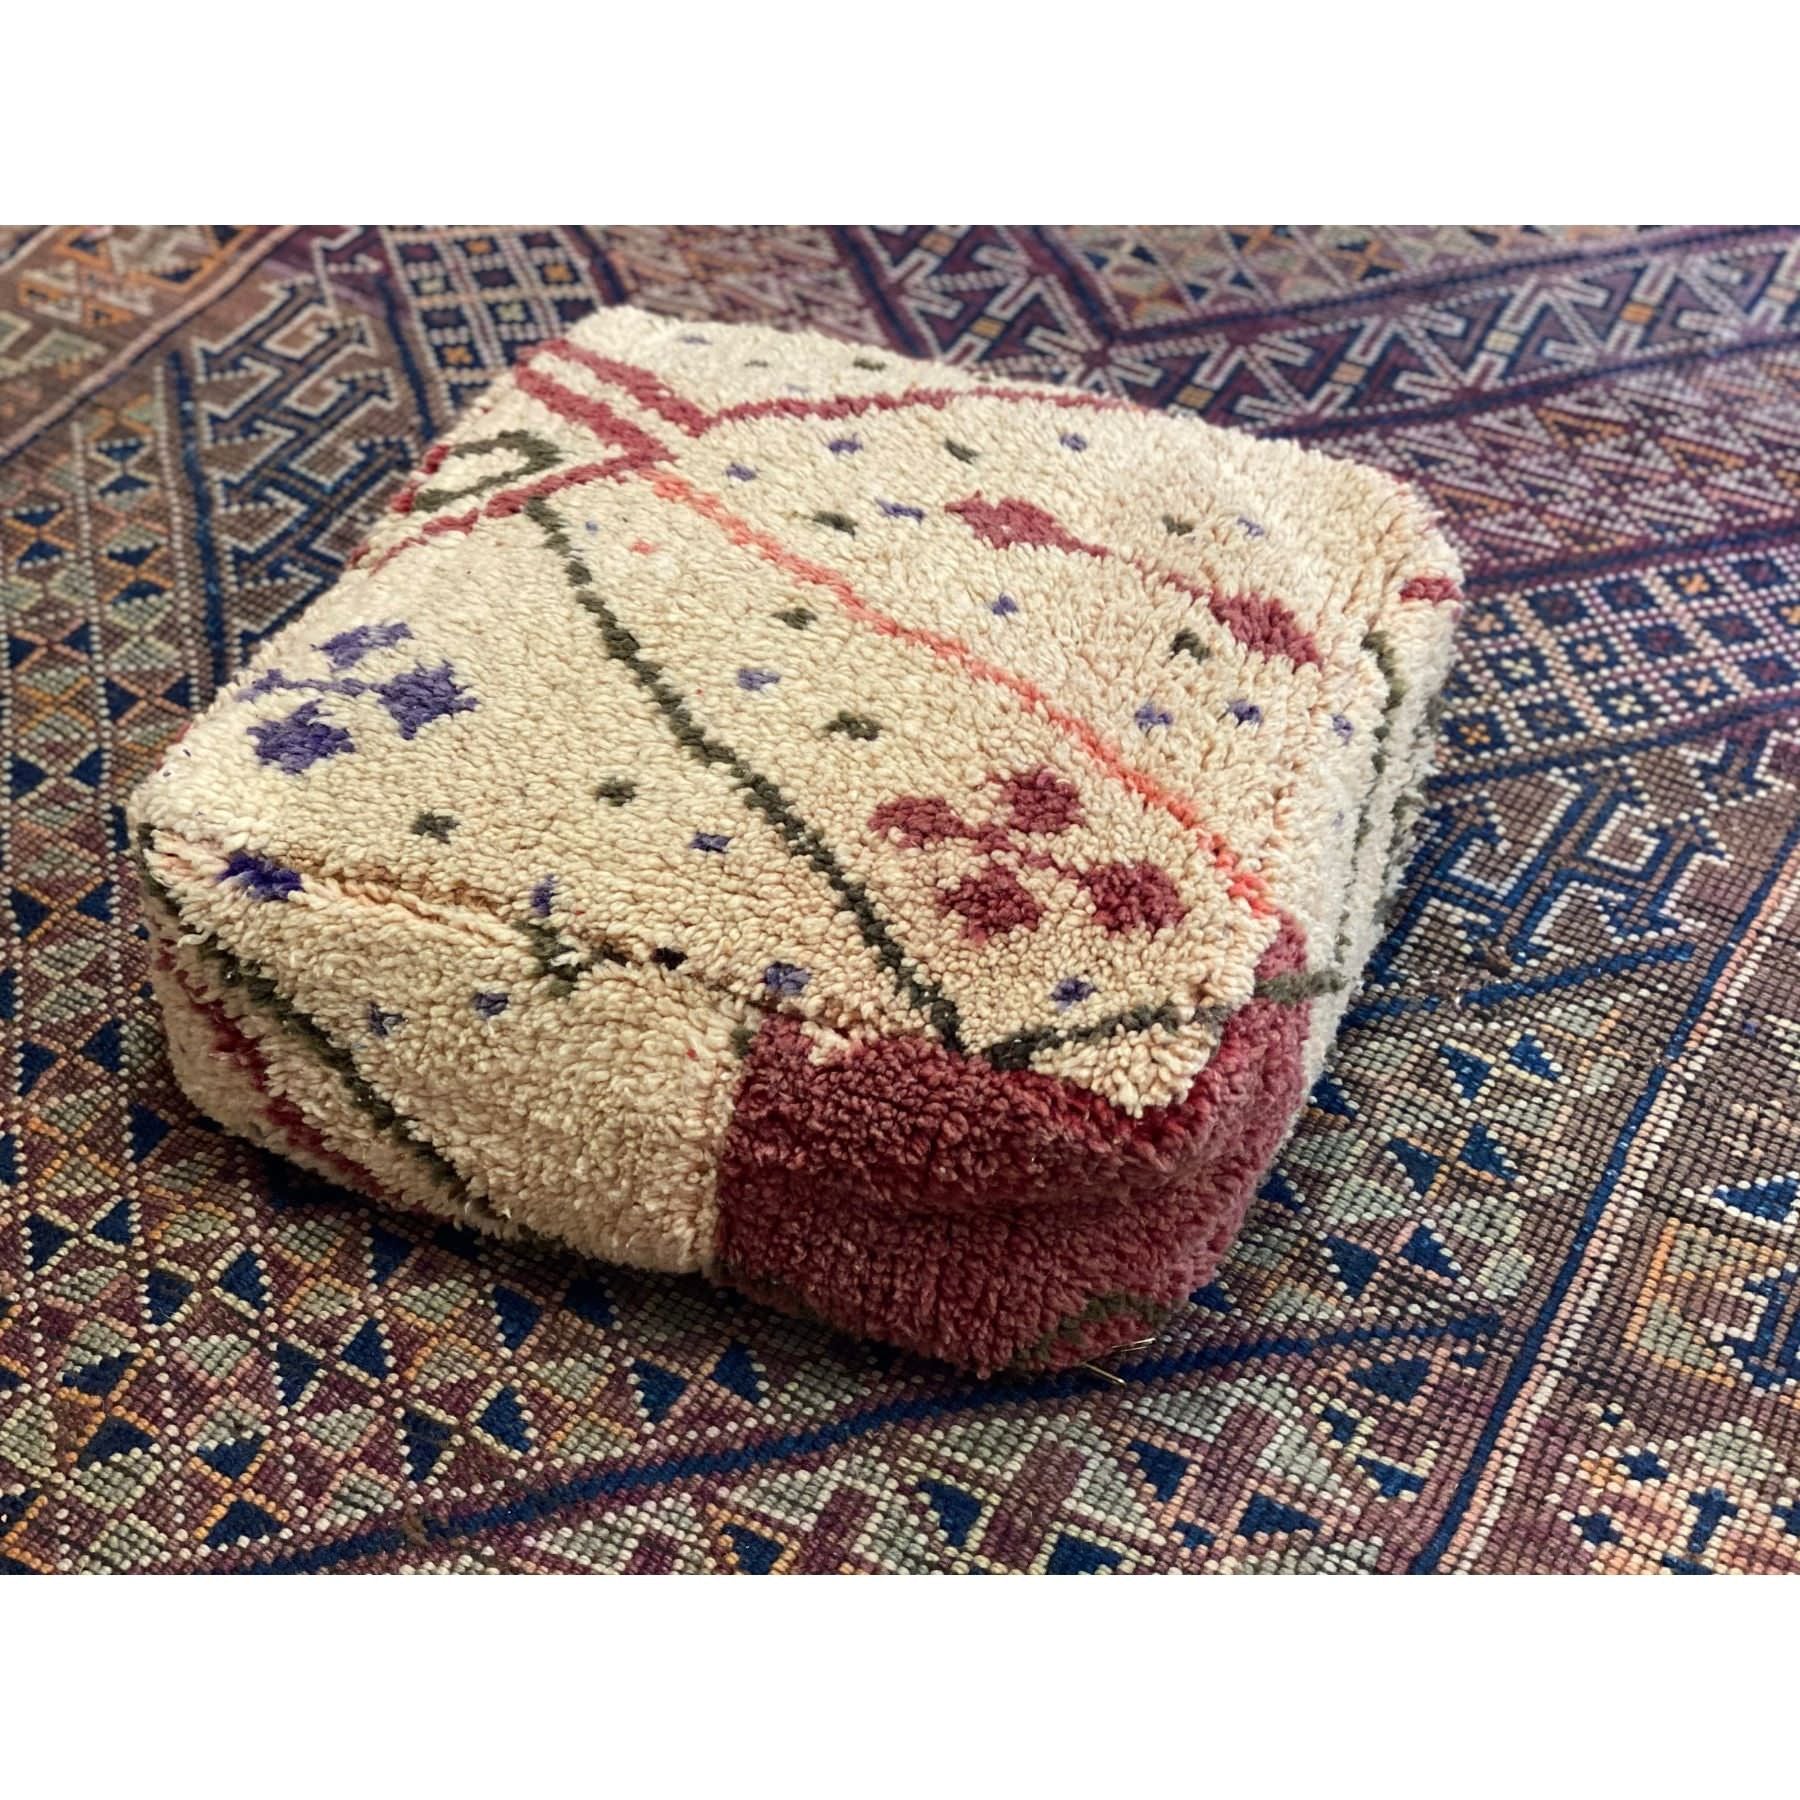 Cream colored Moroccan floor pillow pouf - Kantara | Moroccan Rugs